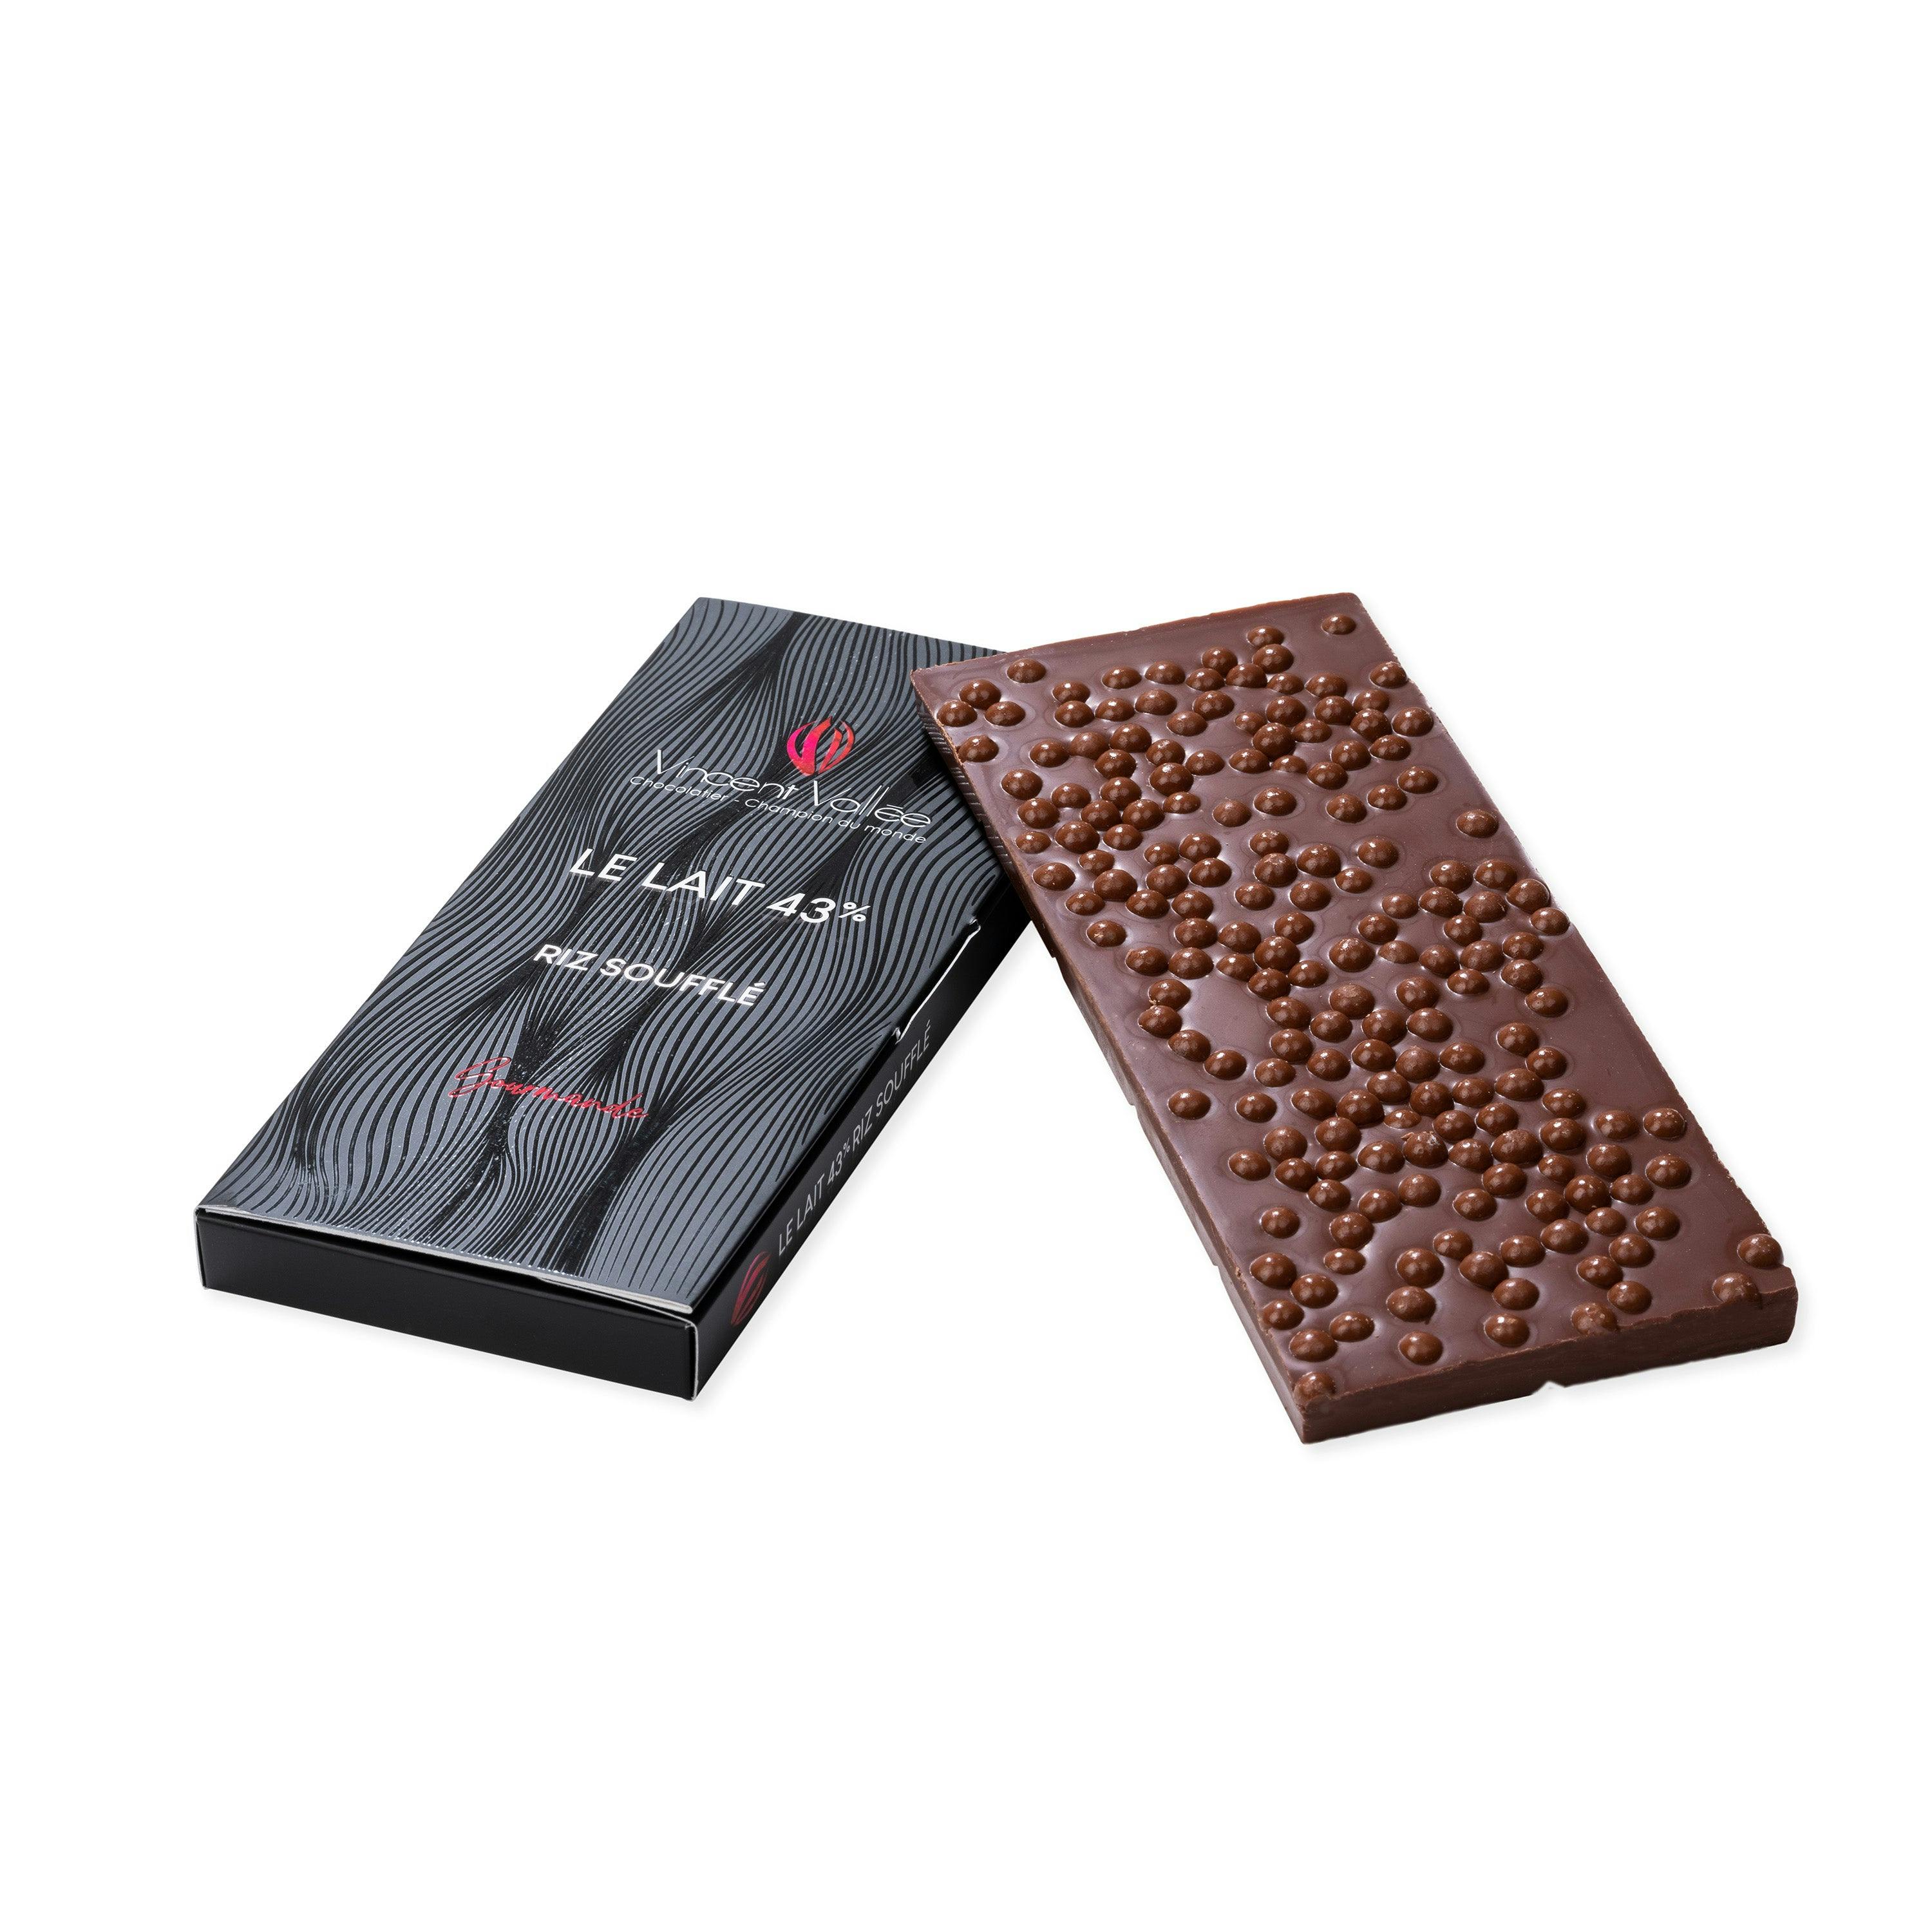 Tablette chocolat Lait Riz soufflé - Vincent Vallée world champion chocolatier